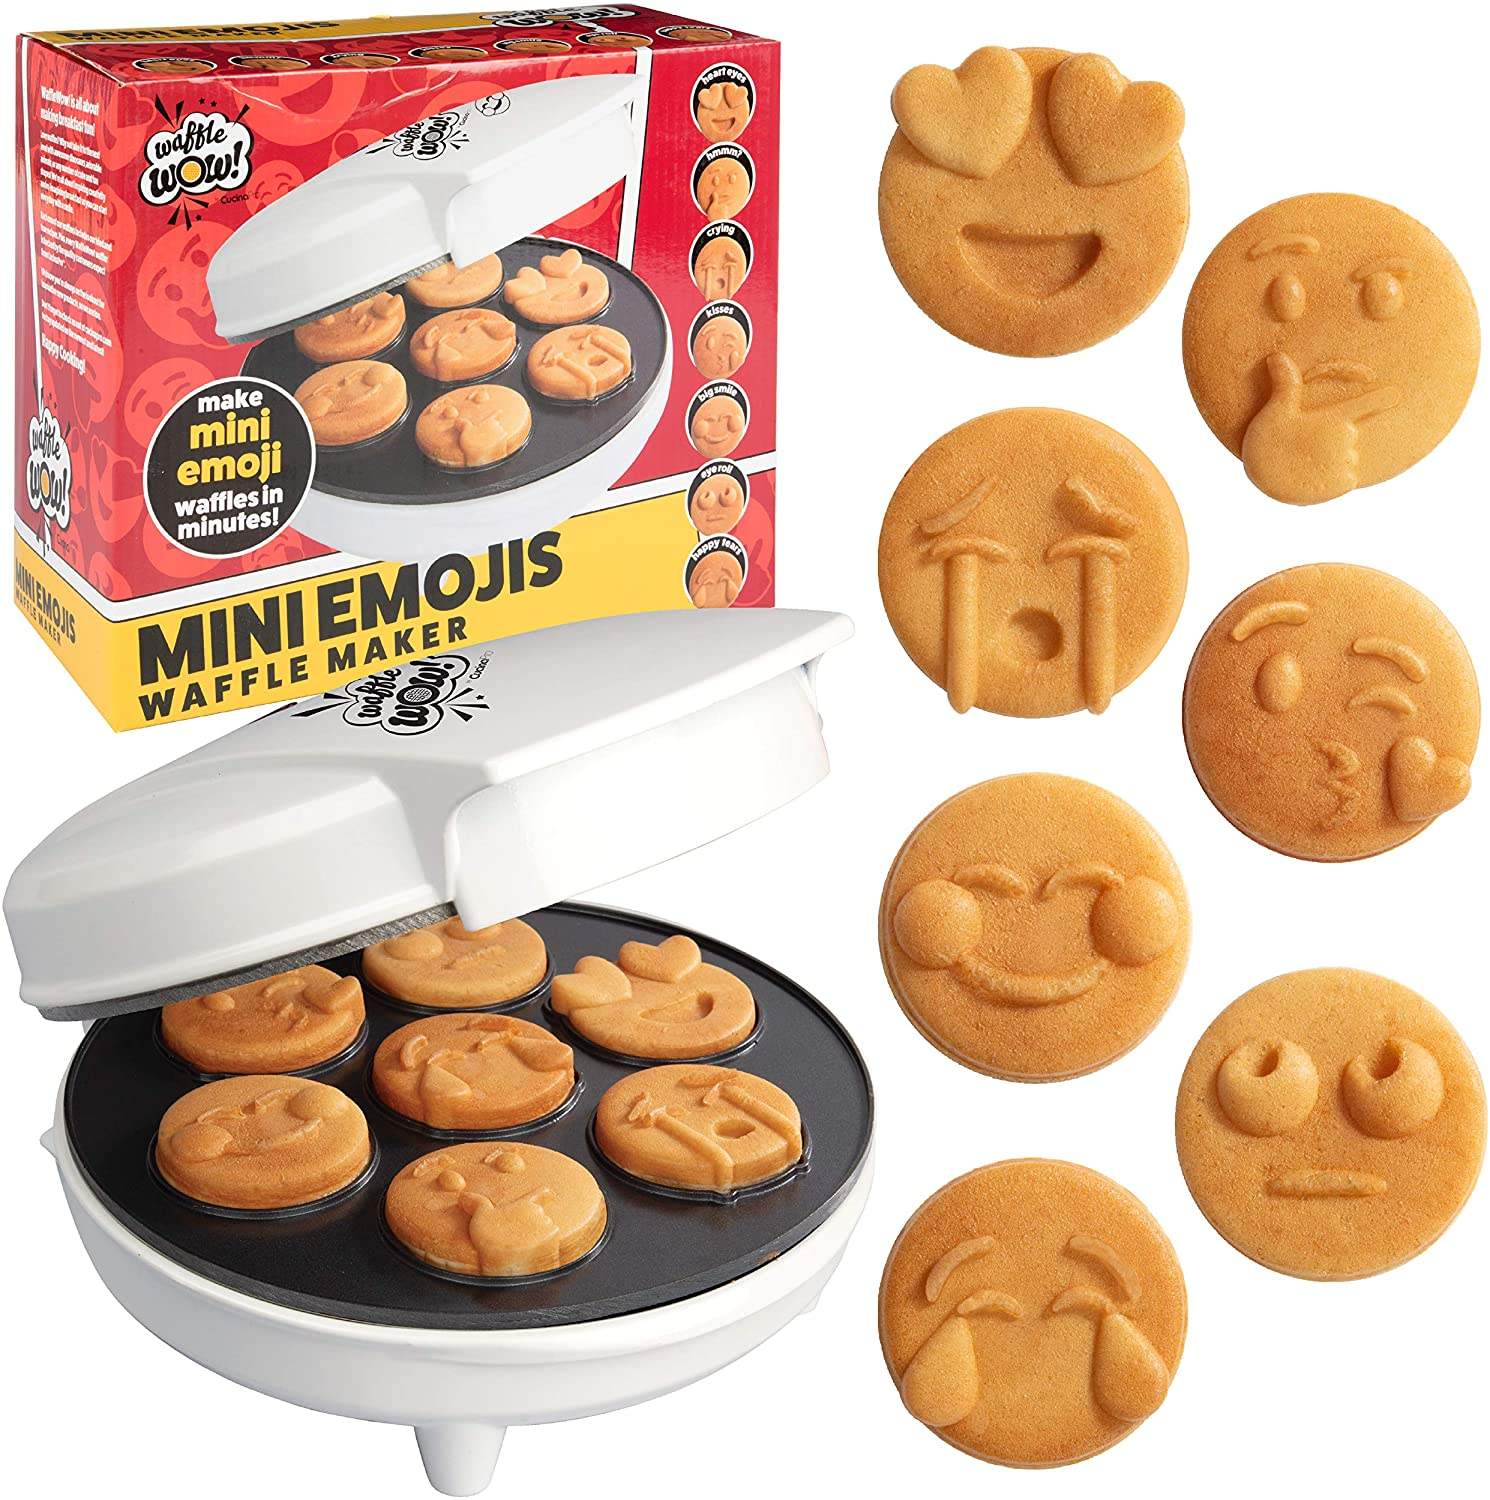 Mini Emojis-Waffle Wow!-